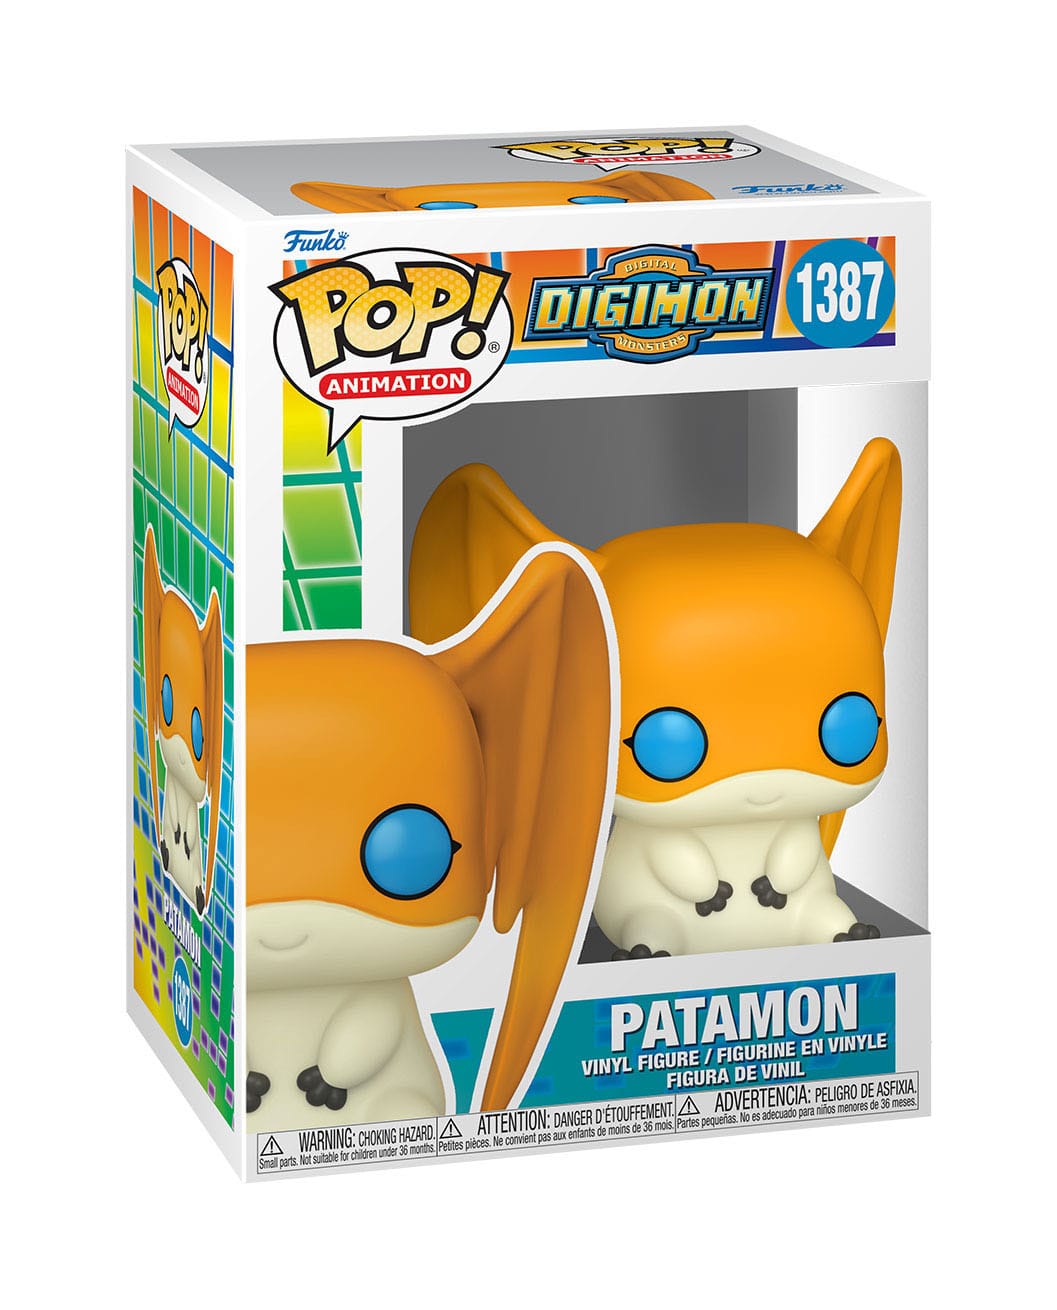 Vinyl Funko POP! Digimon -Patamon 1387